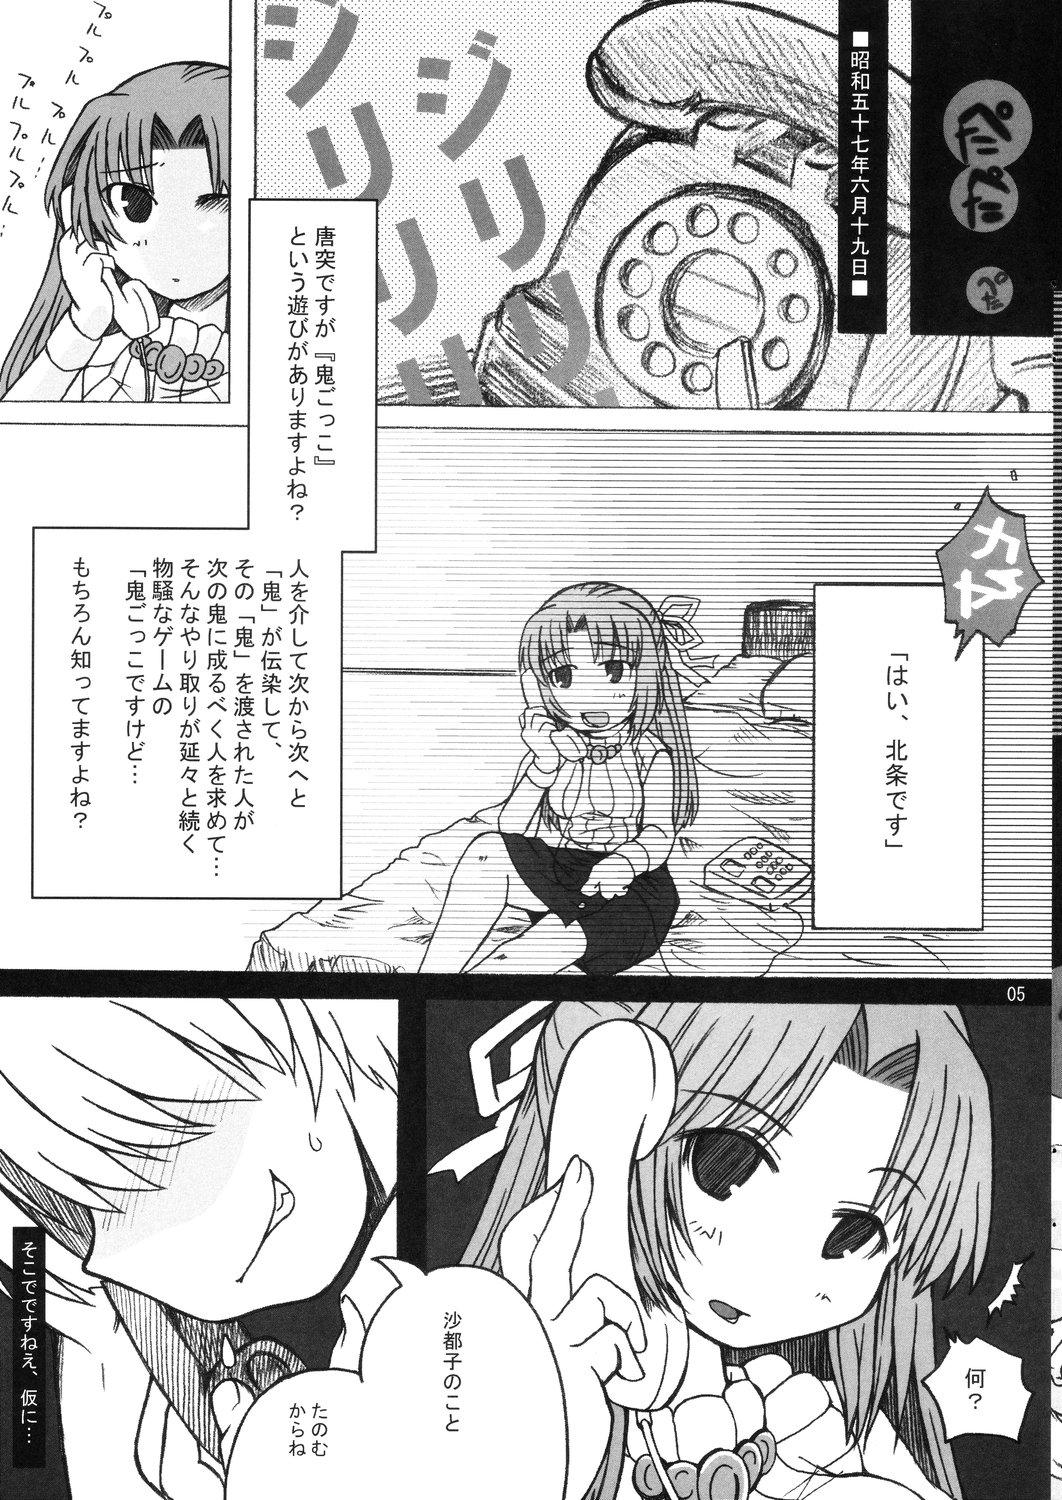 Sloppy Hinamisawa no hon - Shin Kikoku hen - Higurashi no naku koro ni | when they cry Vibrator - Page 5